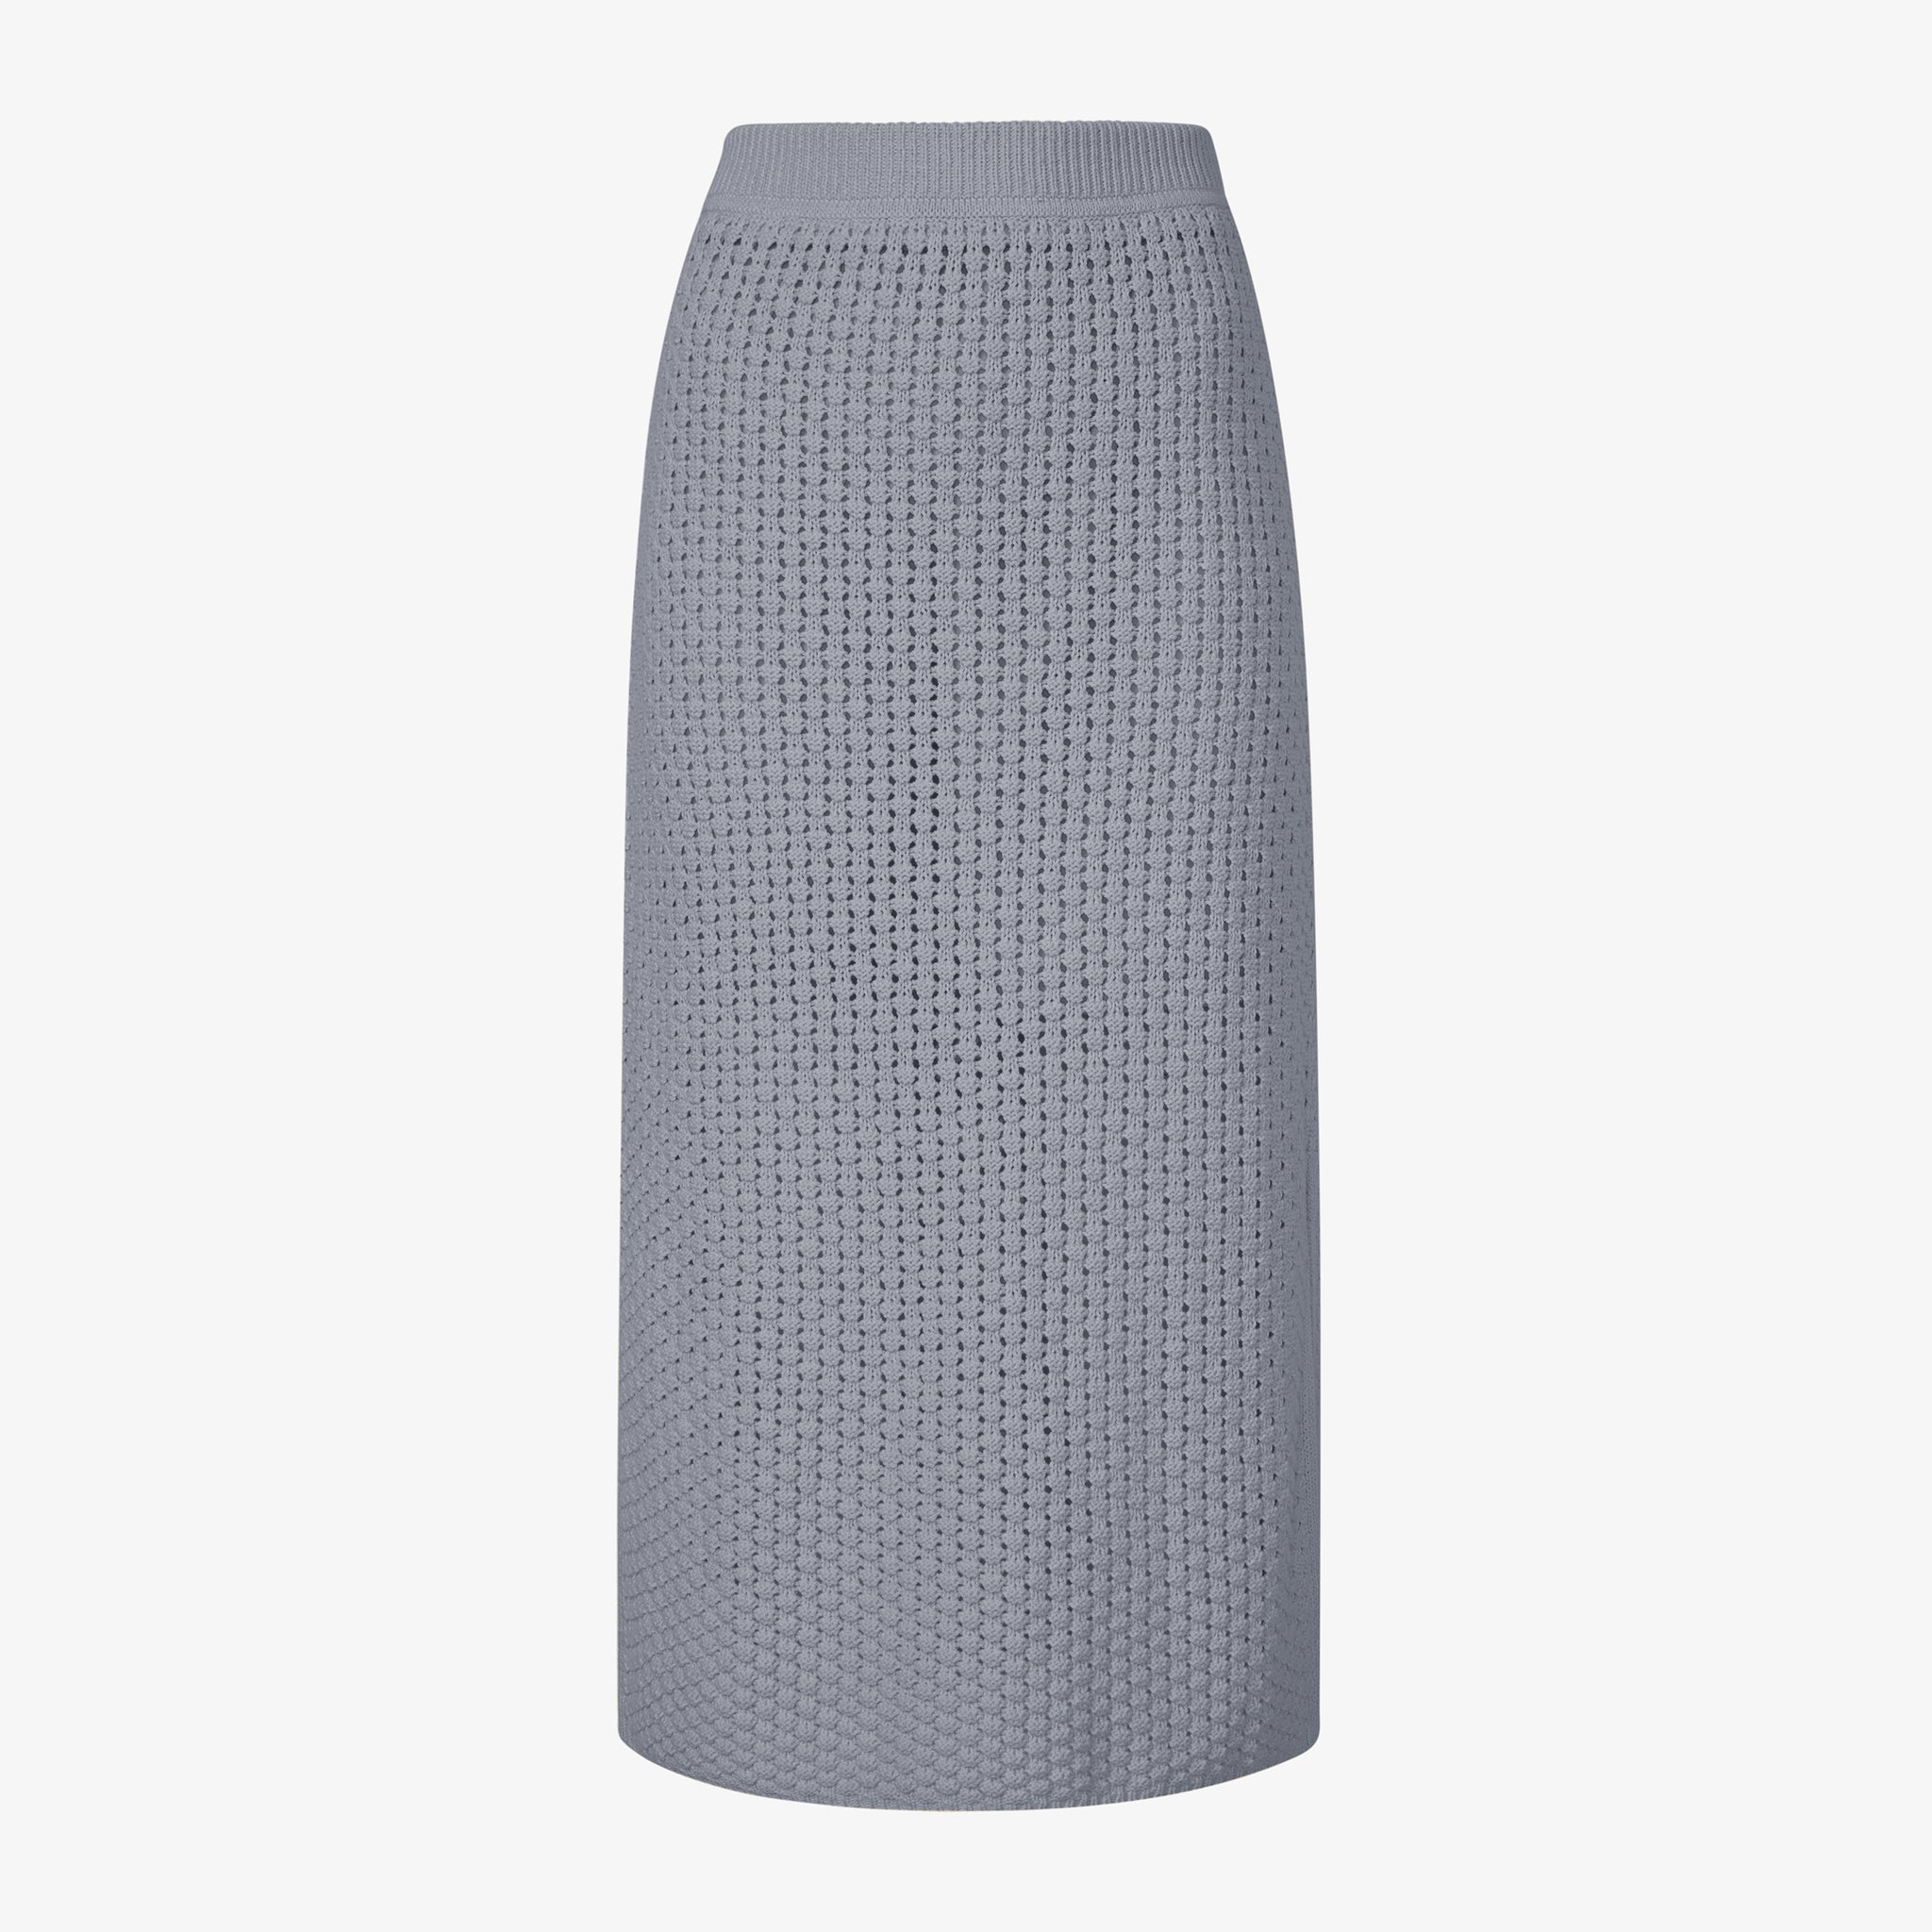 Packshot image of the senga skirt in flint gray